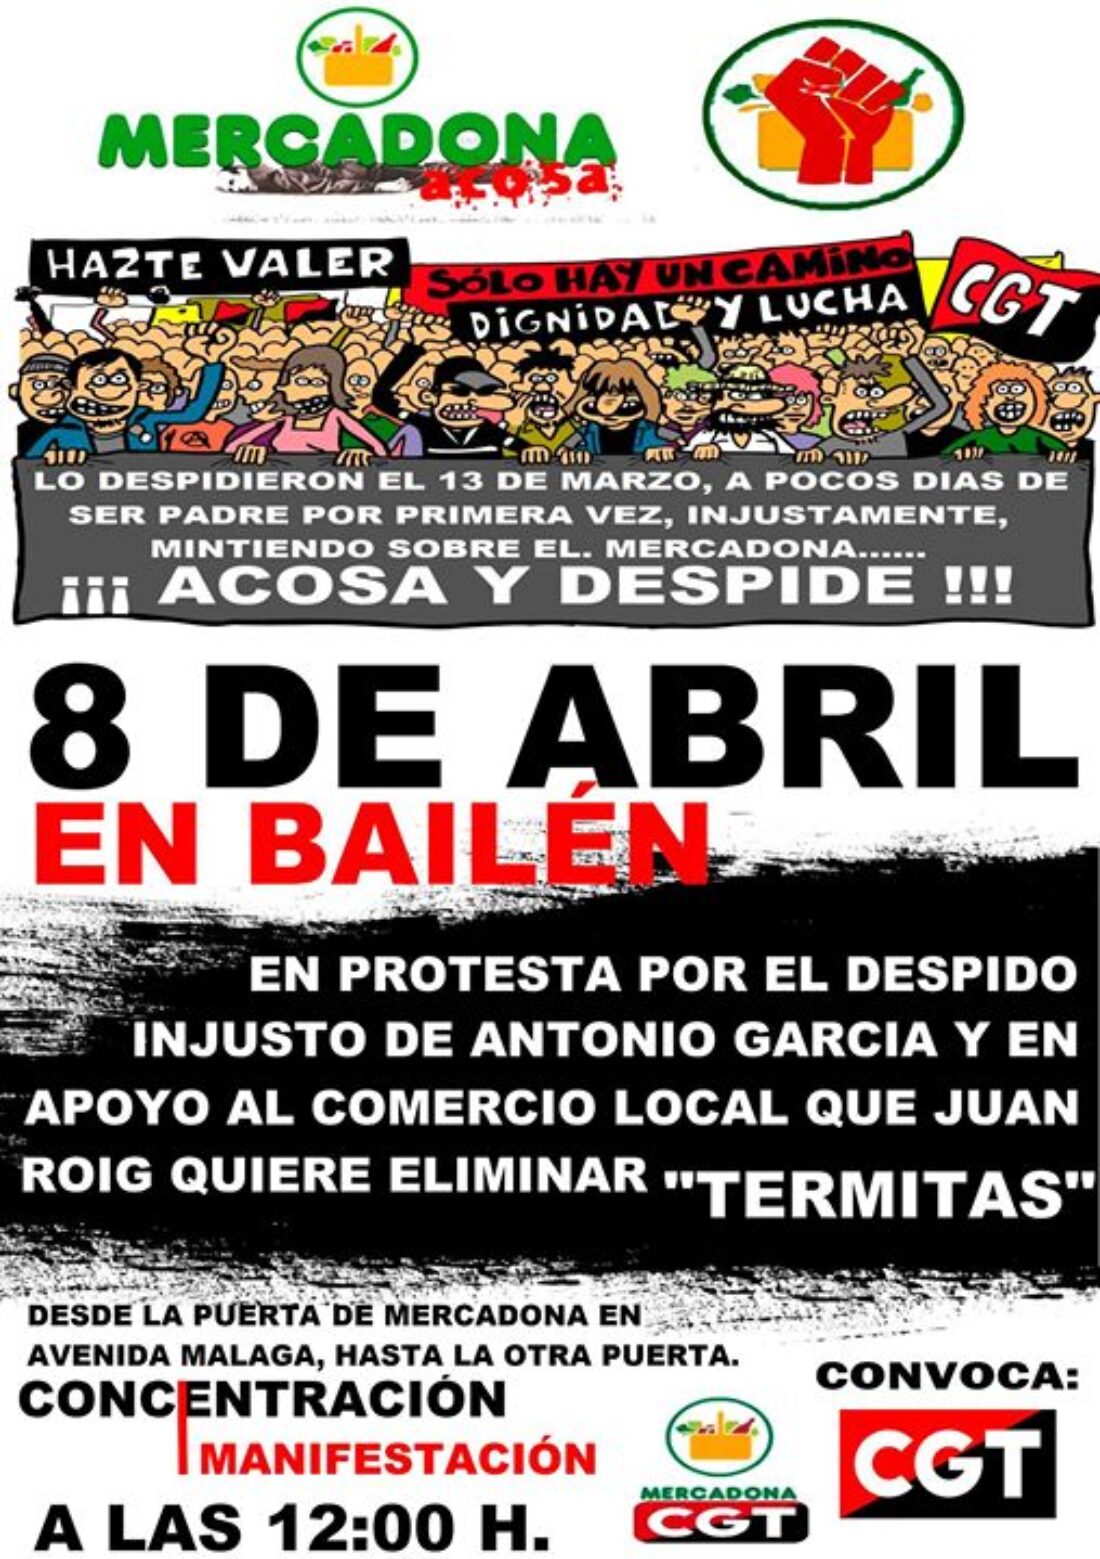 Mercadona acosa y despide: Concentración-Manifestación el 8 de abril en Bailén